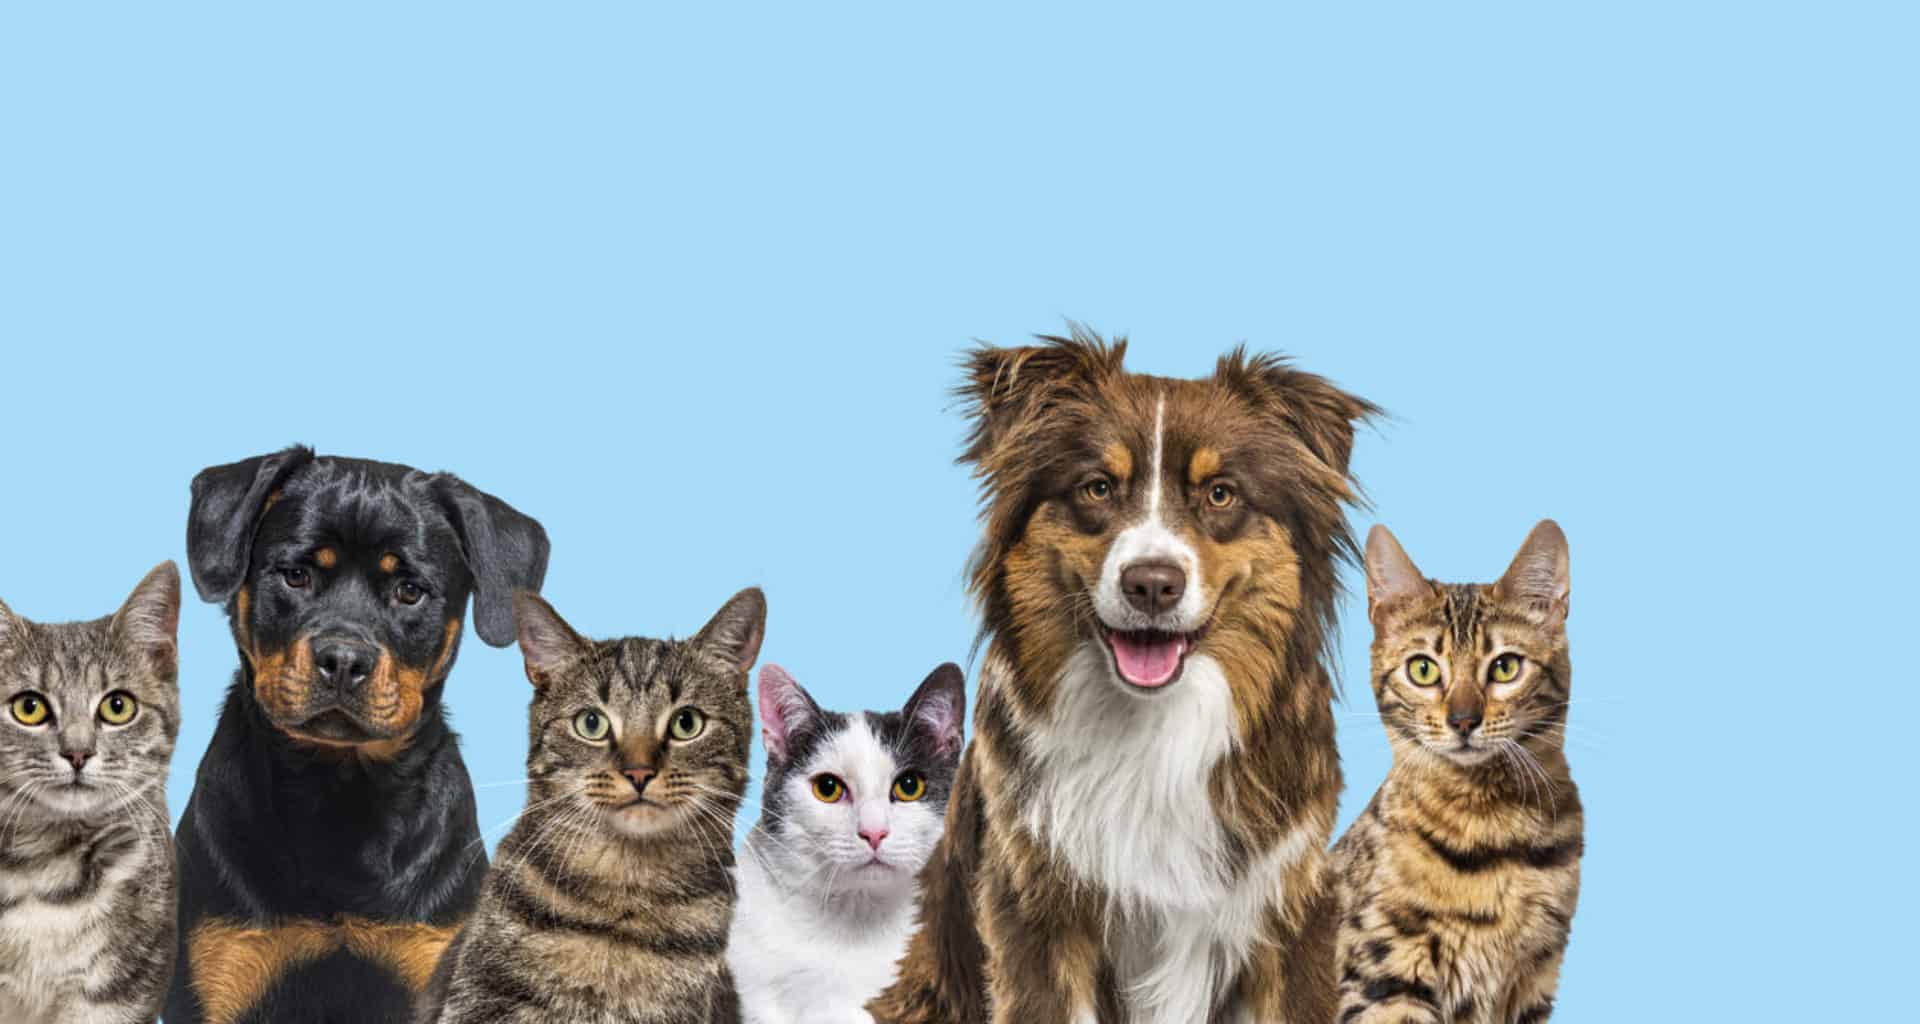 Afinal de contas, qual o melhor animal de estimação: o cão ou o gato? – large group of cats and dogs looking at the camera 2022 08 26 14 15 45 utc